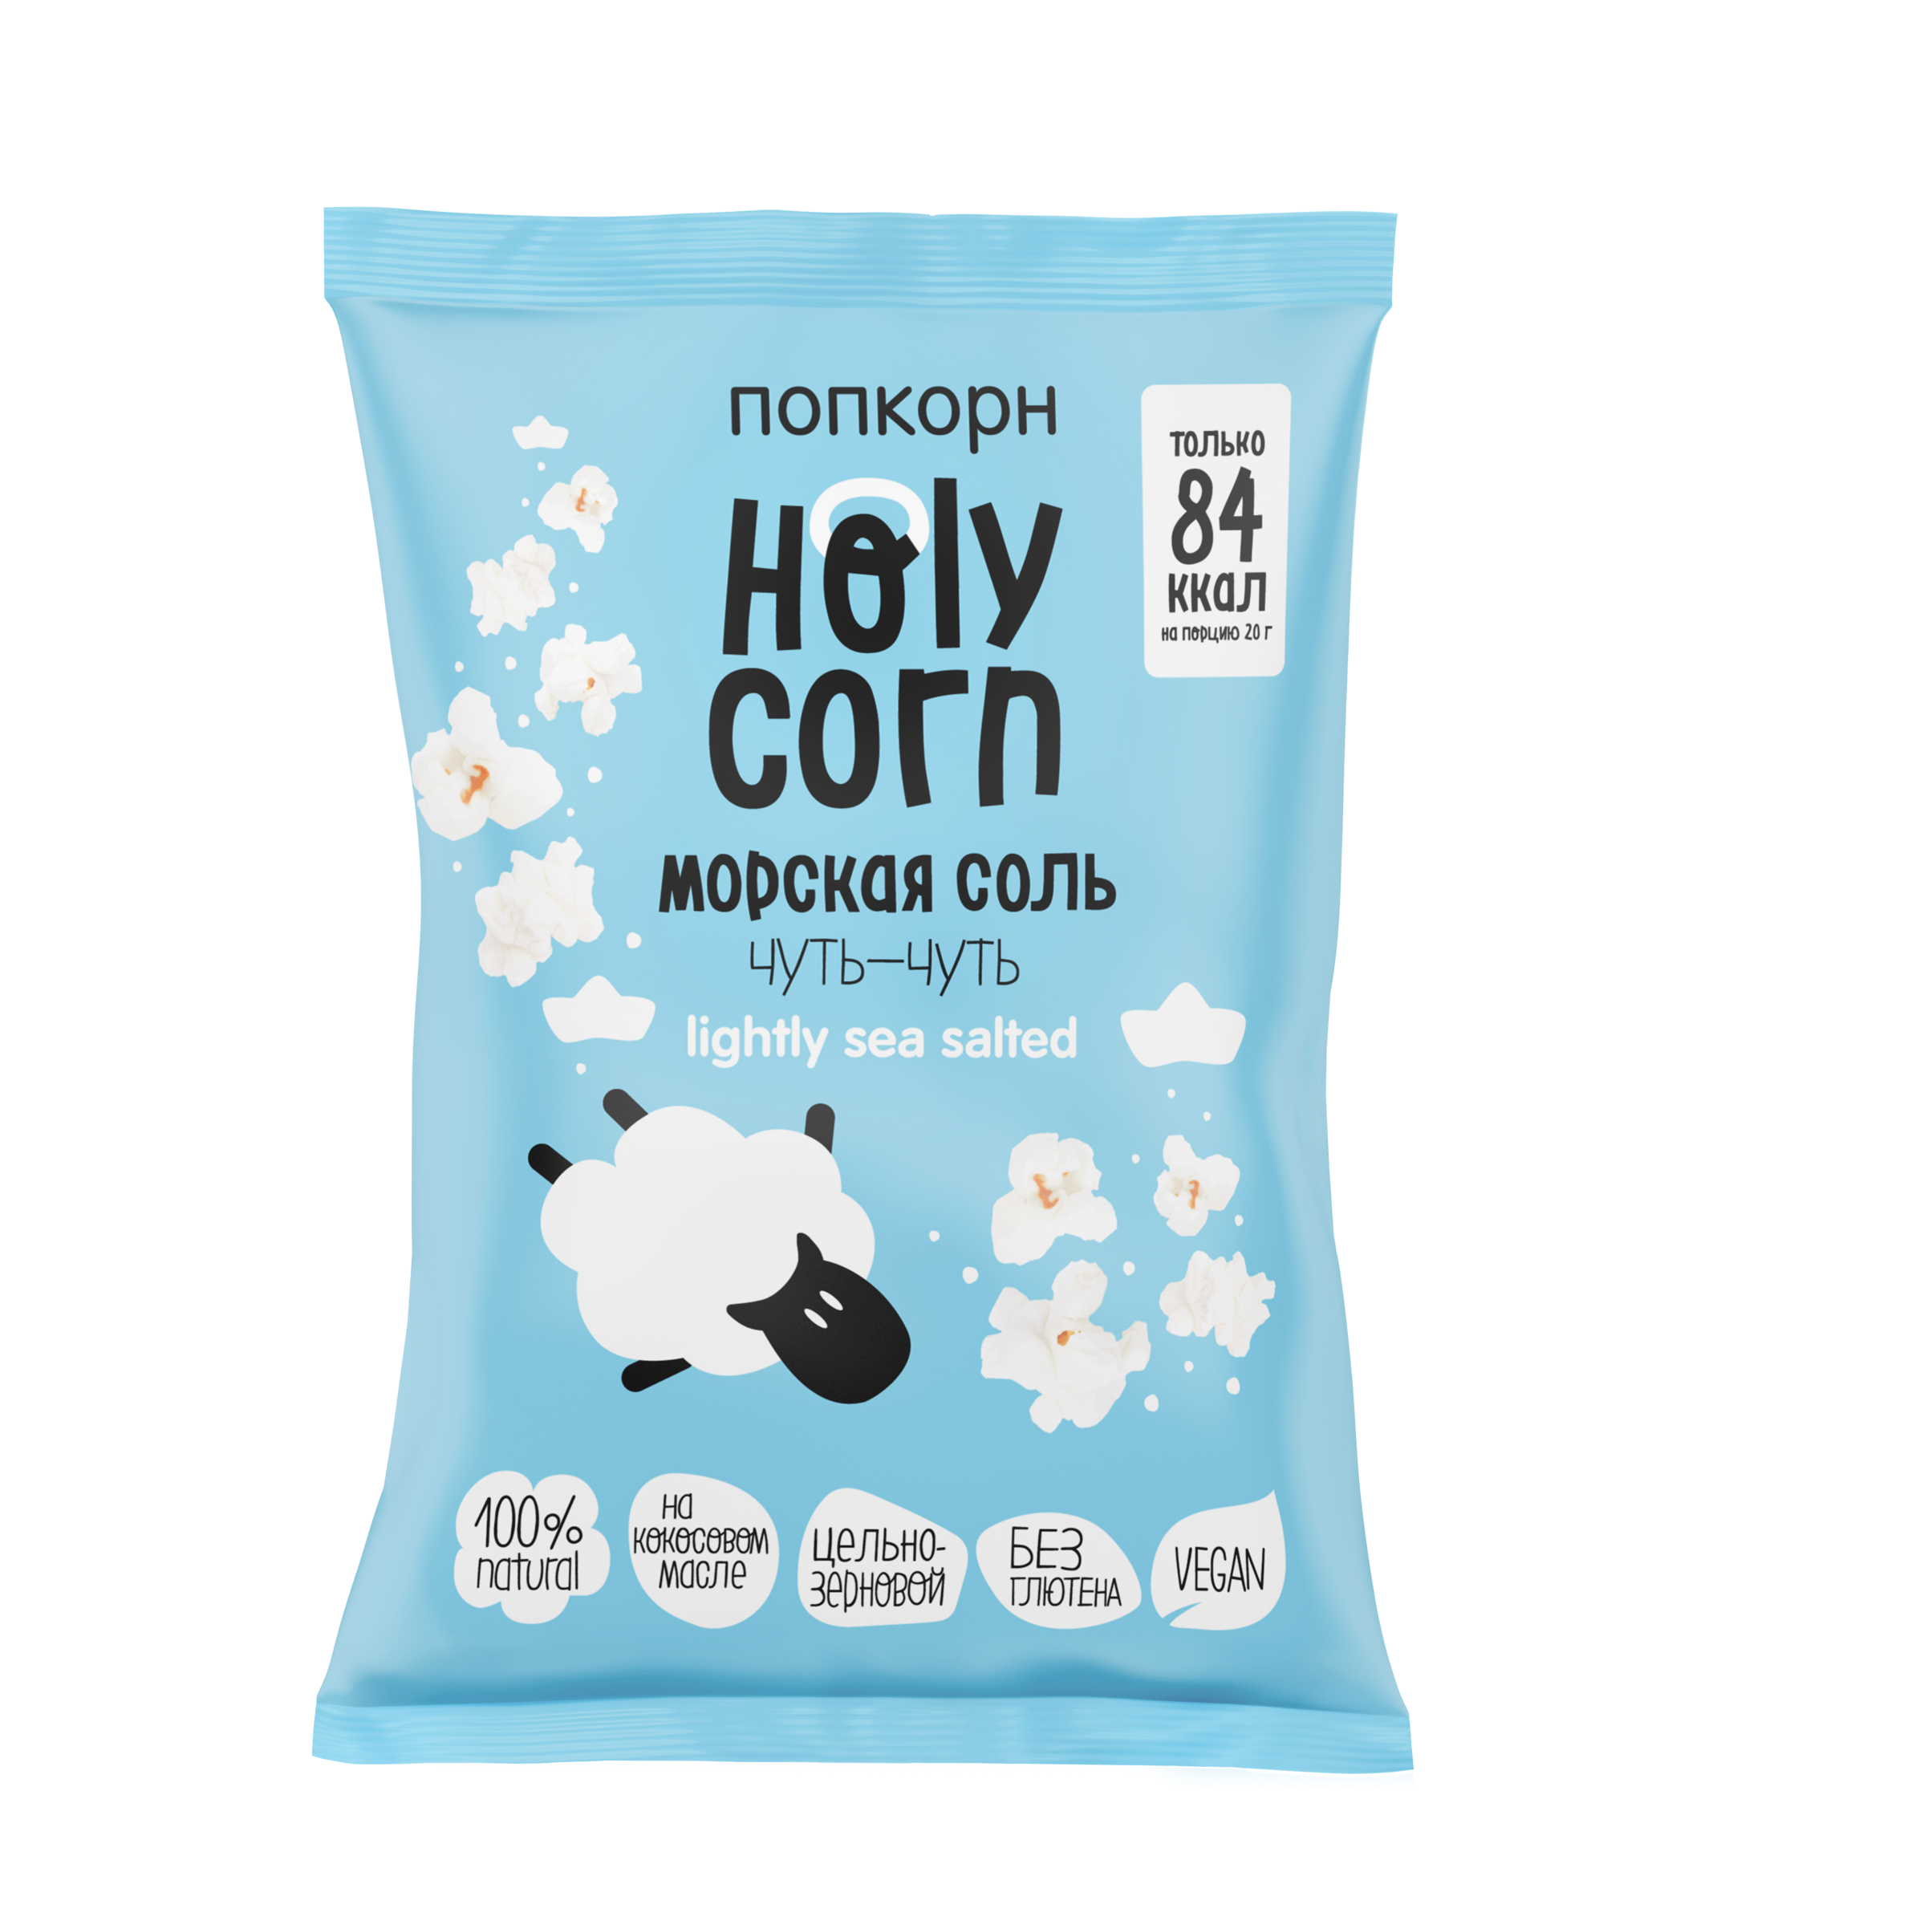 Попкорн Holy Corn морская соль - 60 г